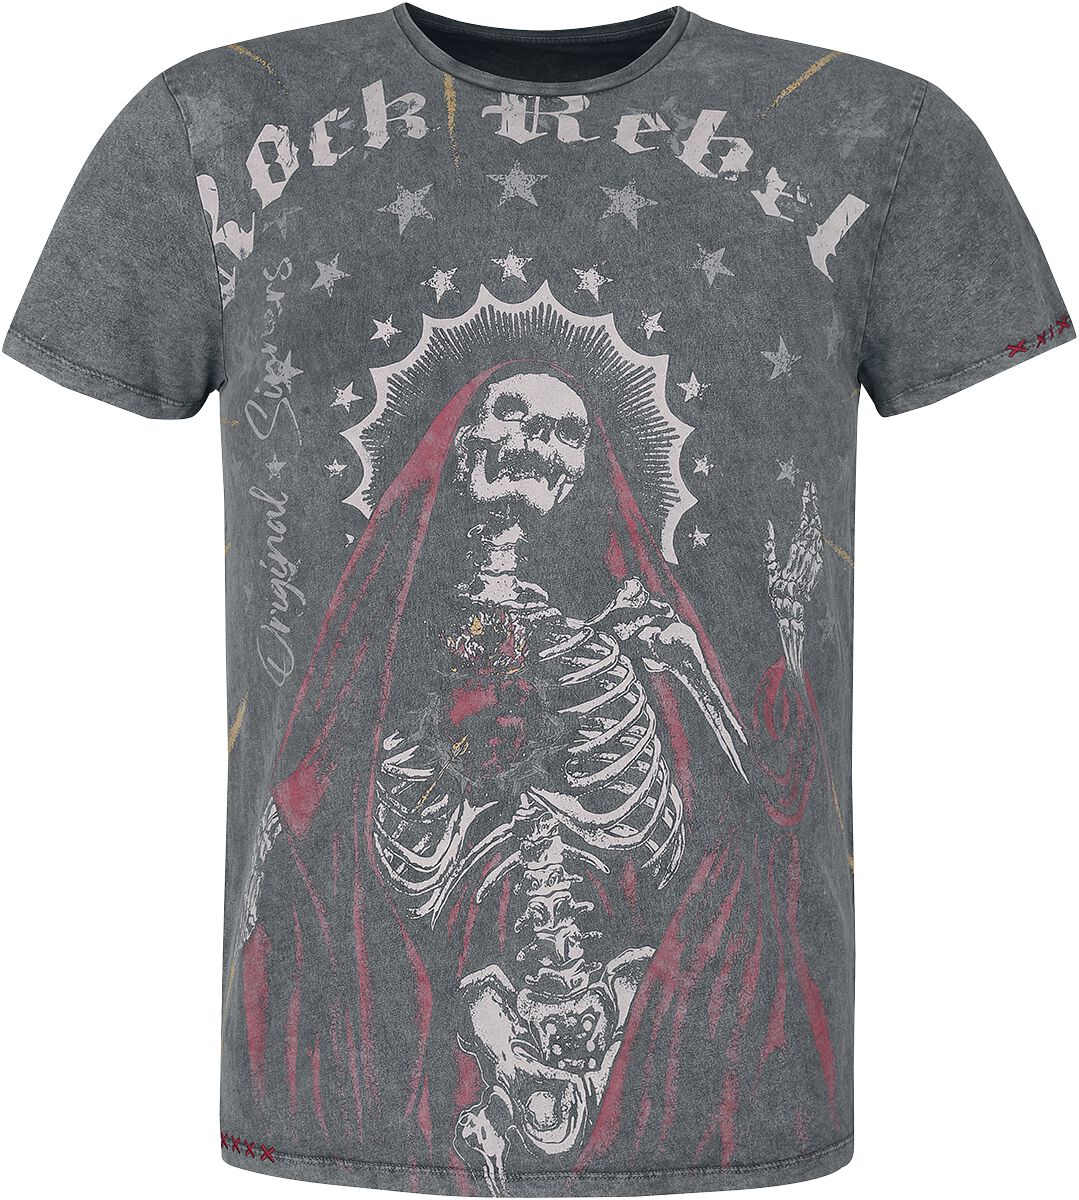 Rock Rebel by EMP - Rock T-Shirt - T-Shirt mit großem Frontprint - S bis XL - für Männer - Größe S - schwarz